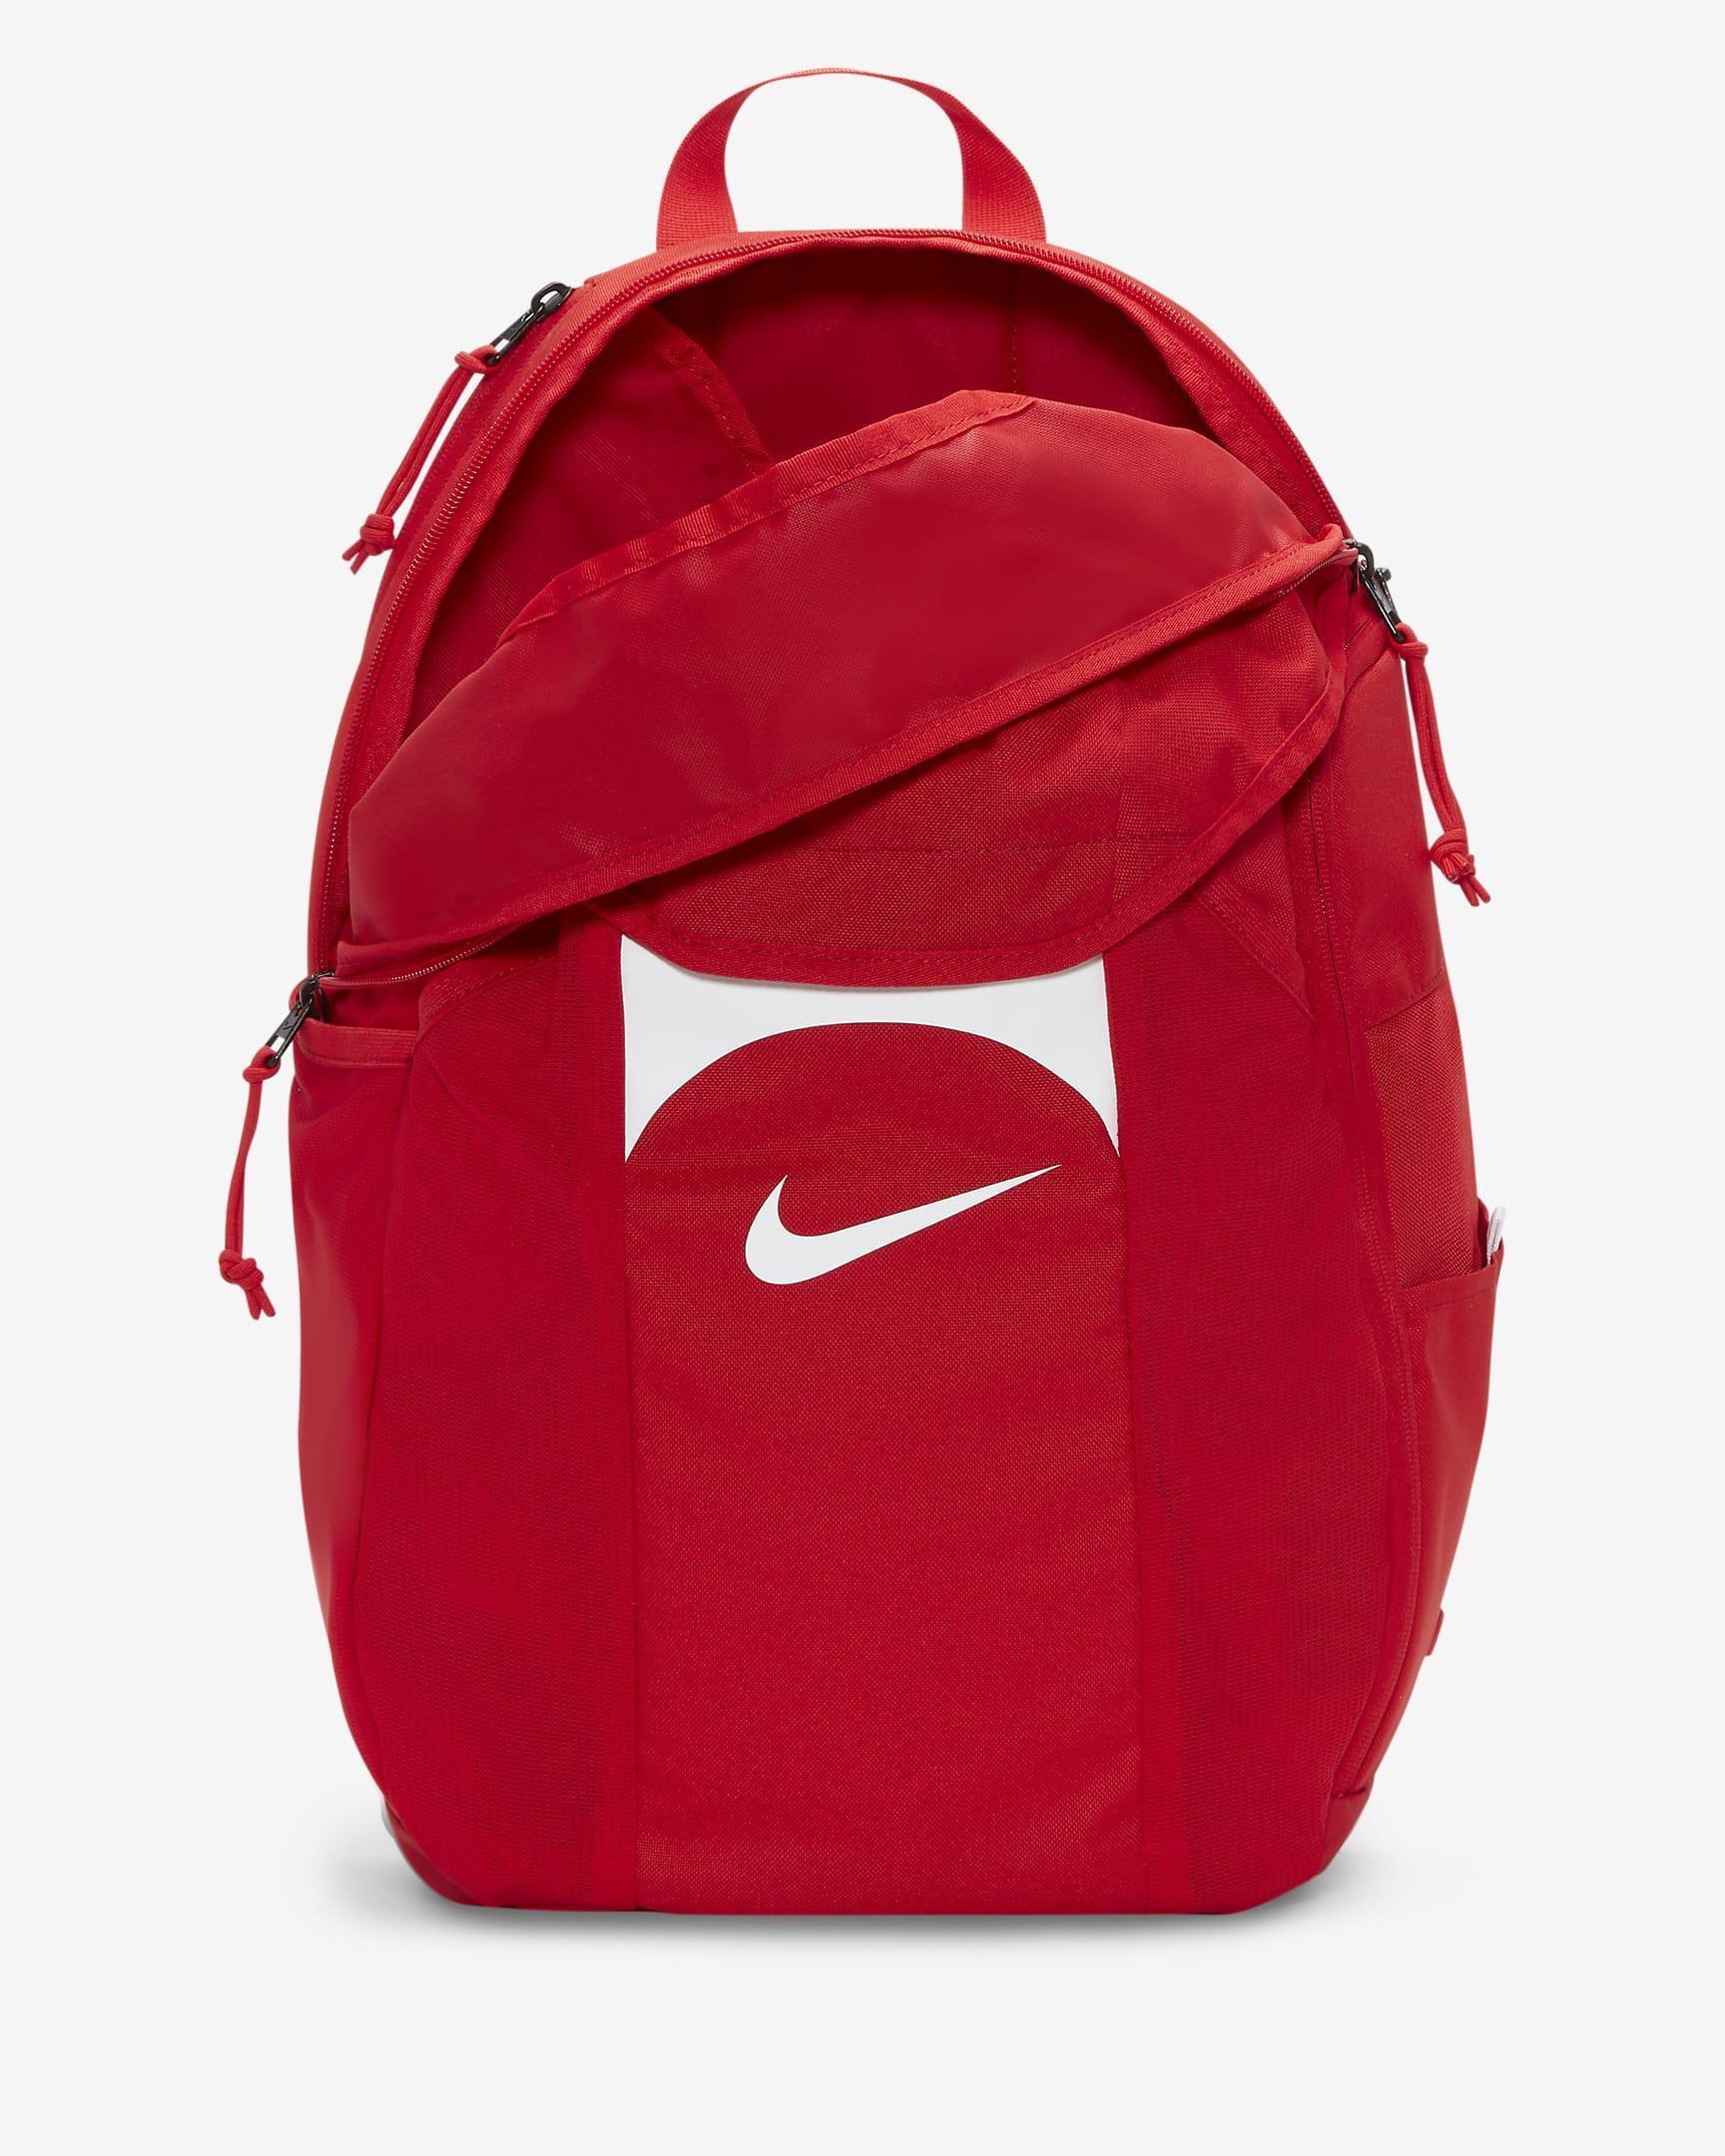 Zaino Nike Team backpack rosso 30L